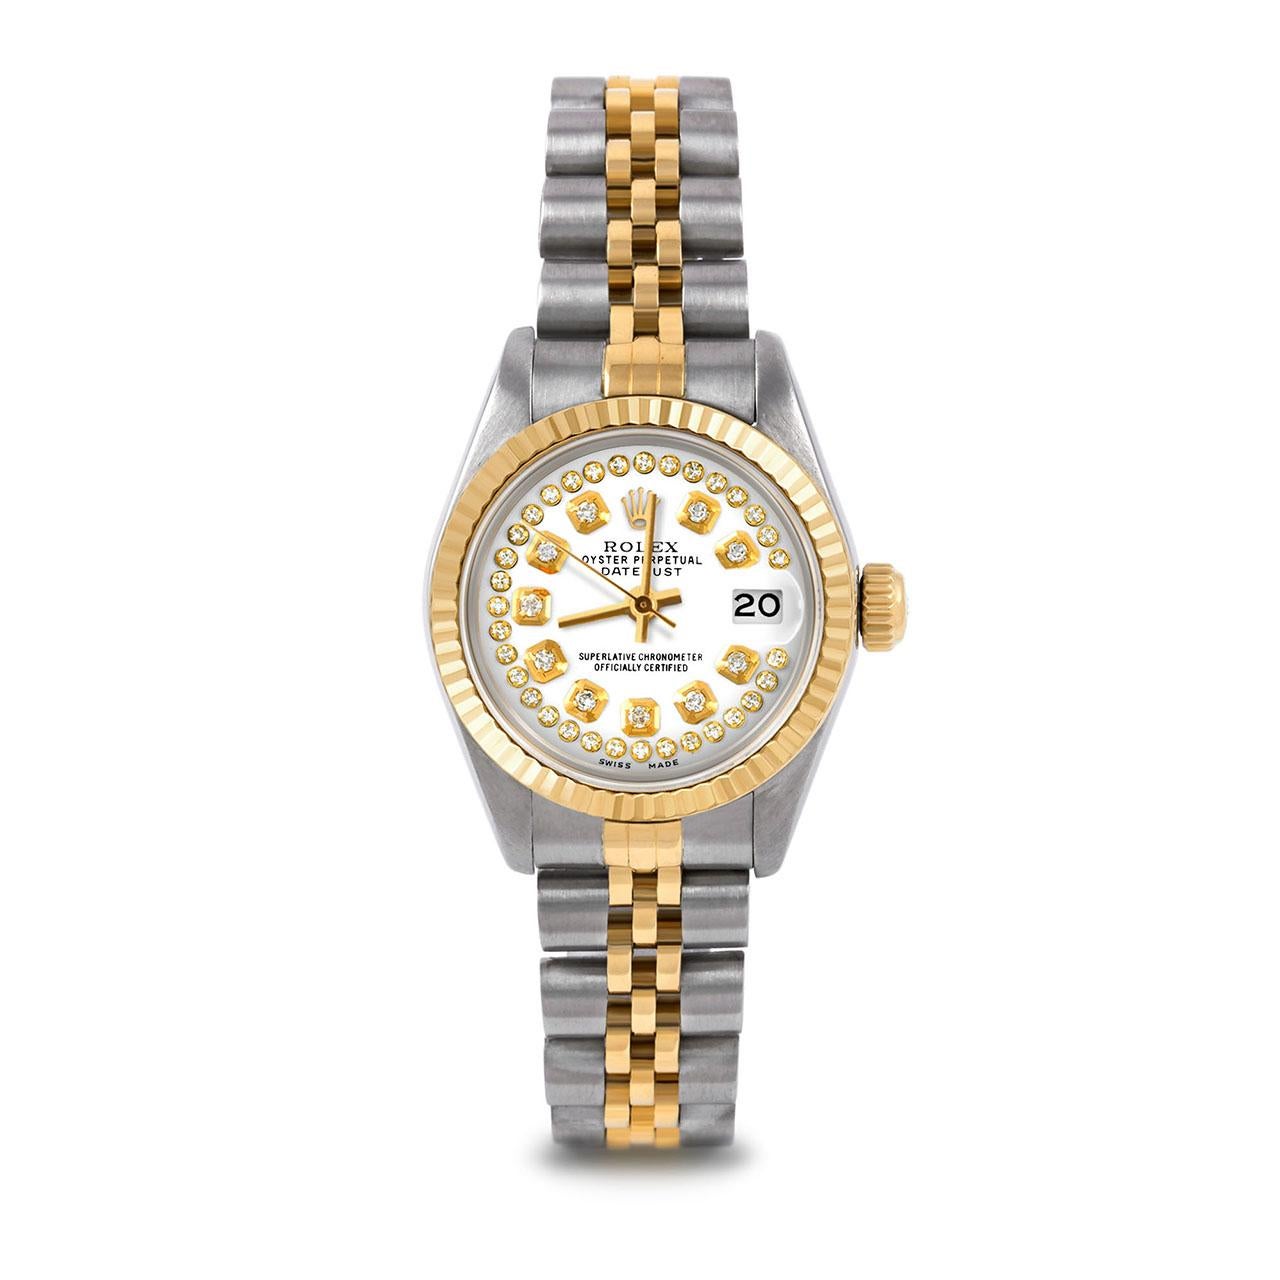 Montre Rolex 6917 26mm Two Tone Datejust pour femme, cadran personnalisé en diamants blancs et lunette cannelée sur bracelet jubilé en or jaune 14K et acier inoxydable.   

SKU 6917-TT-WHT-STRD-FLT-JBL


Marque/Modèle :        Rolex Datejust
Numéro